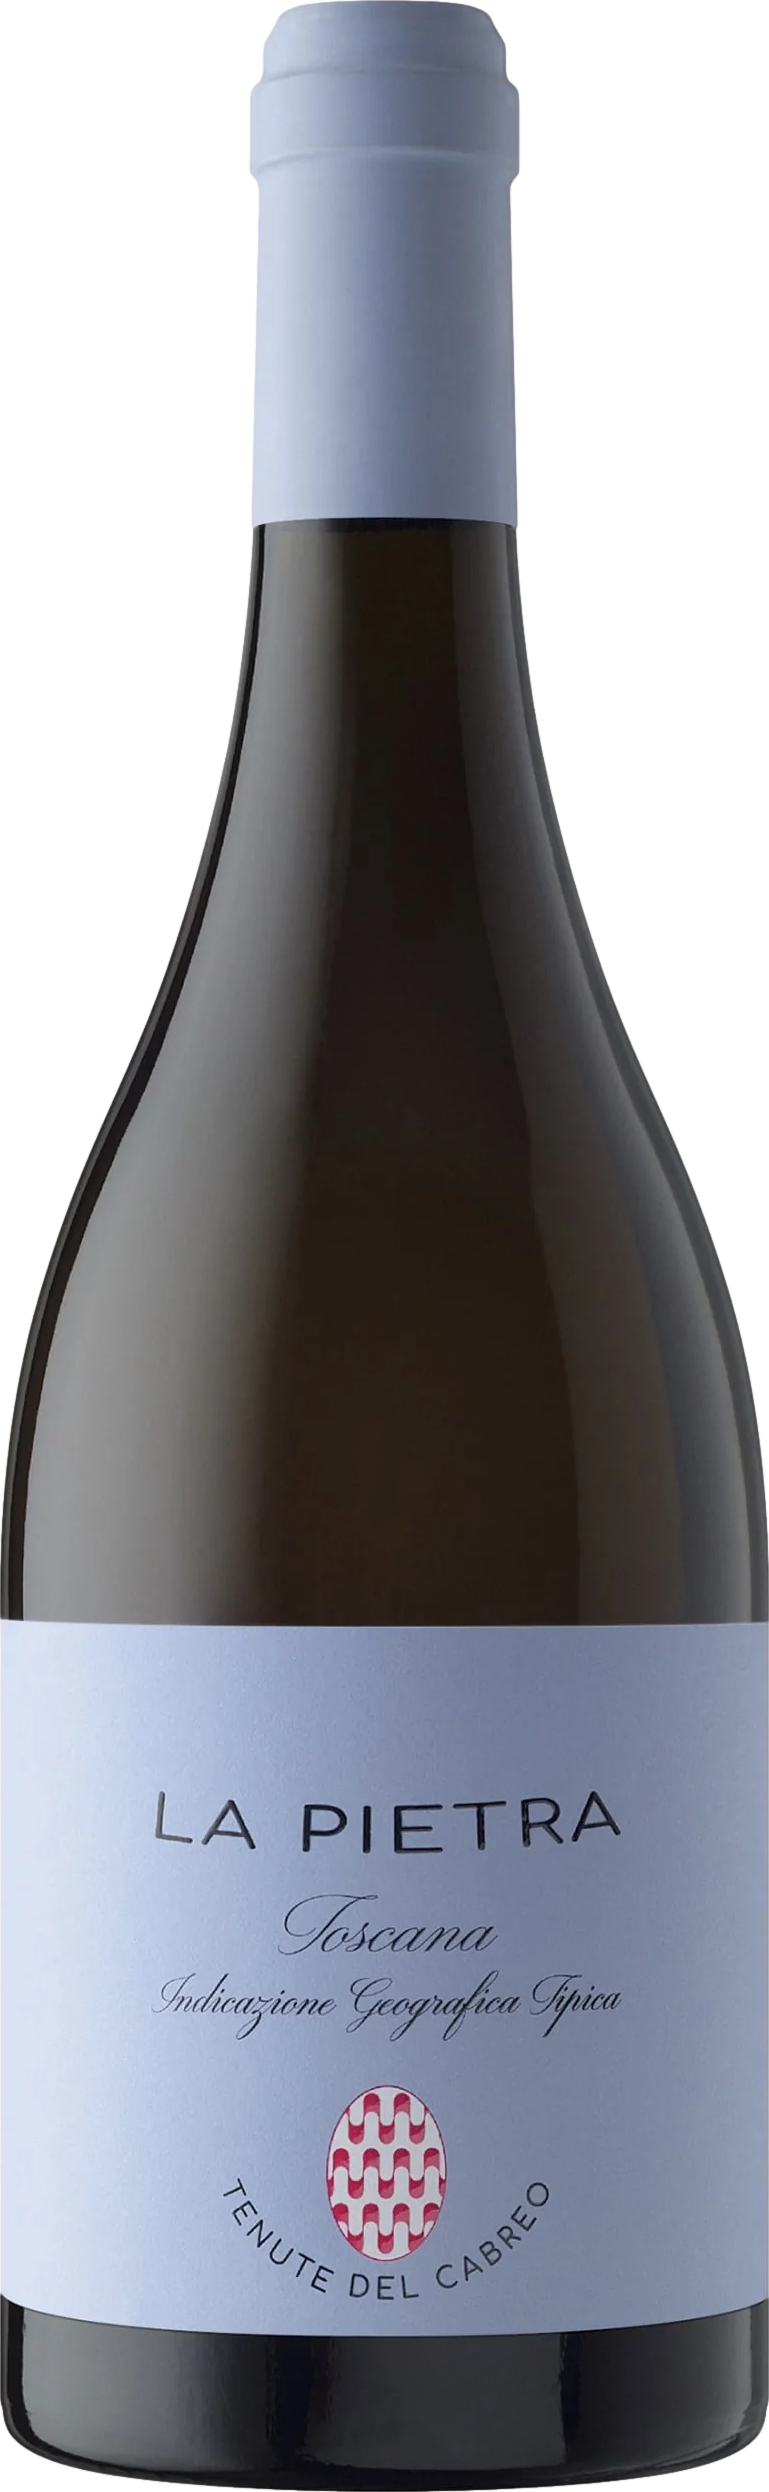 Tenute del Cabreo La Pietra Chardonnay 2019 Folonari 8wines DACH